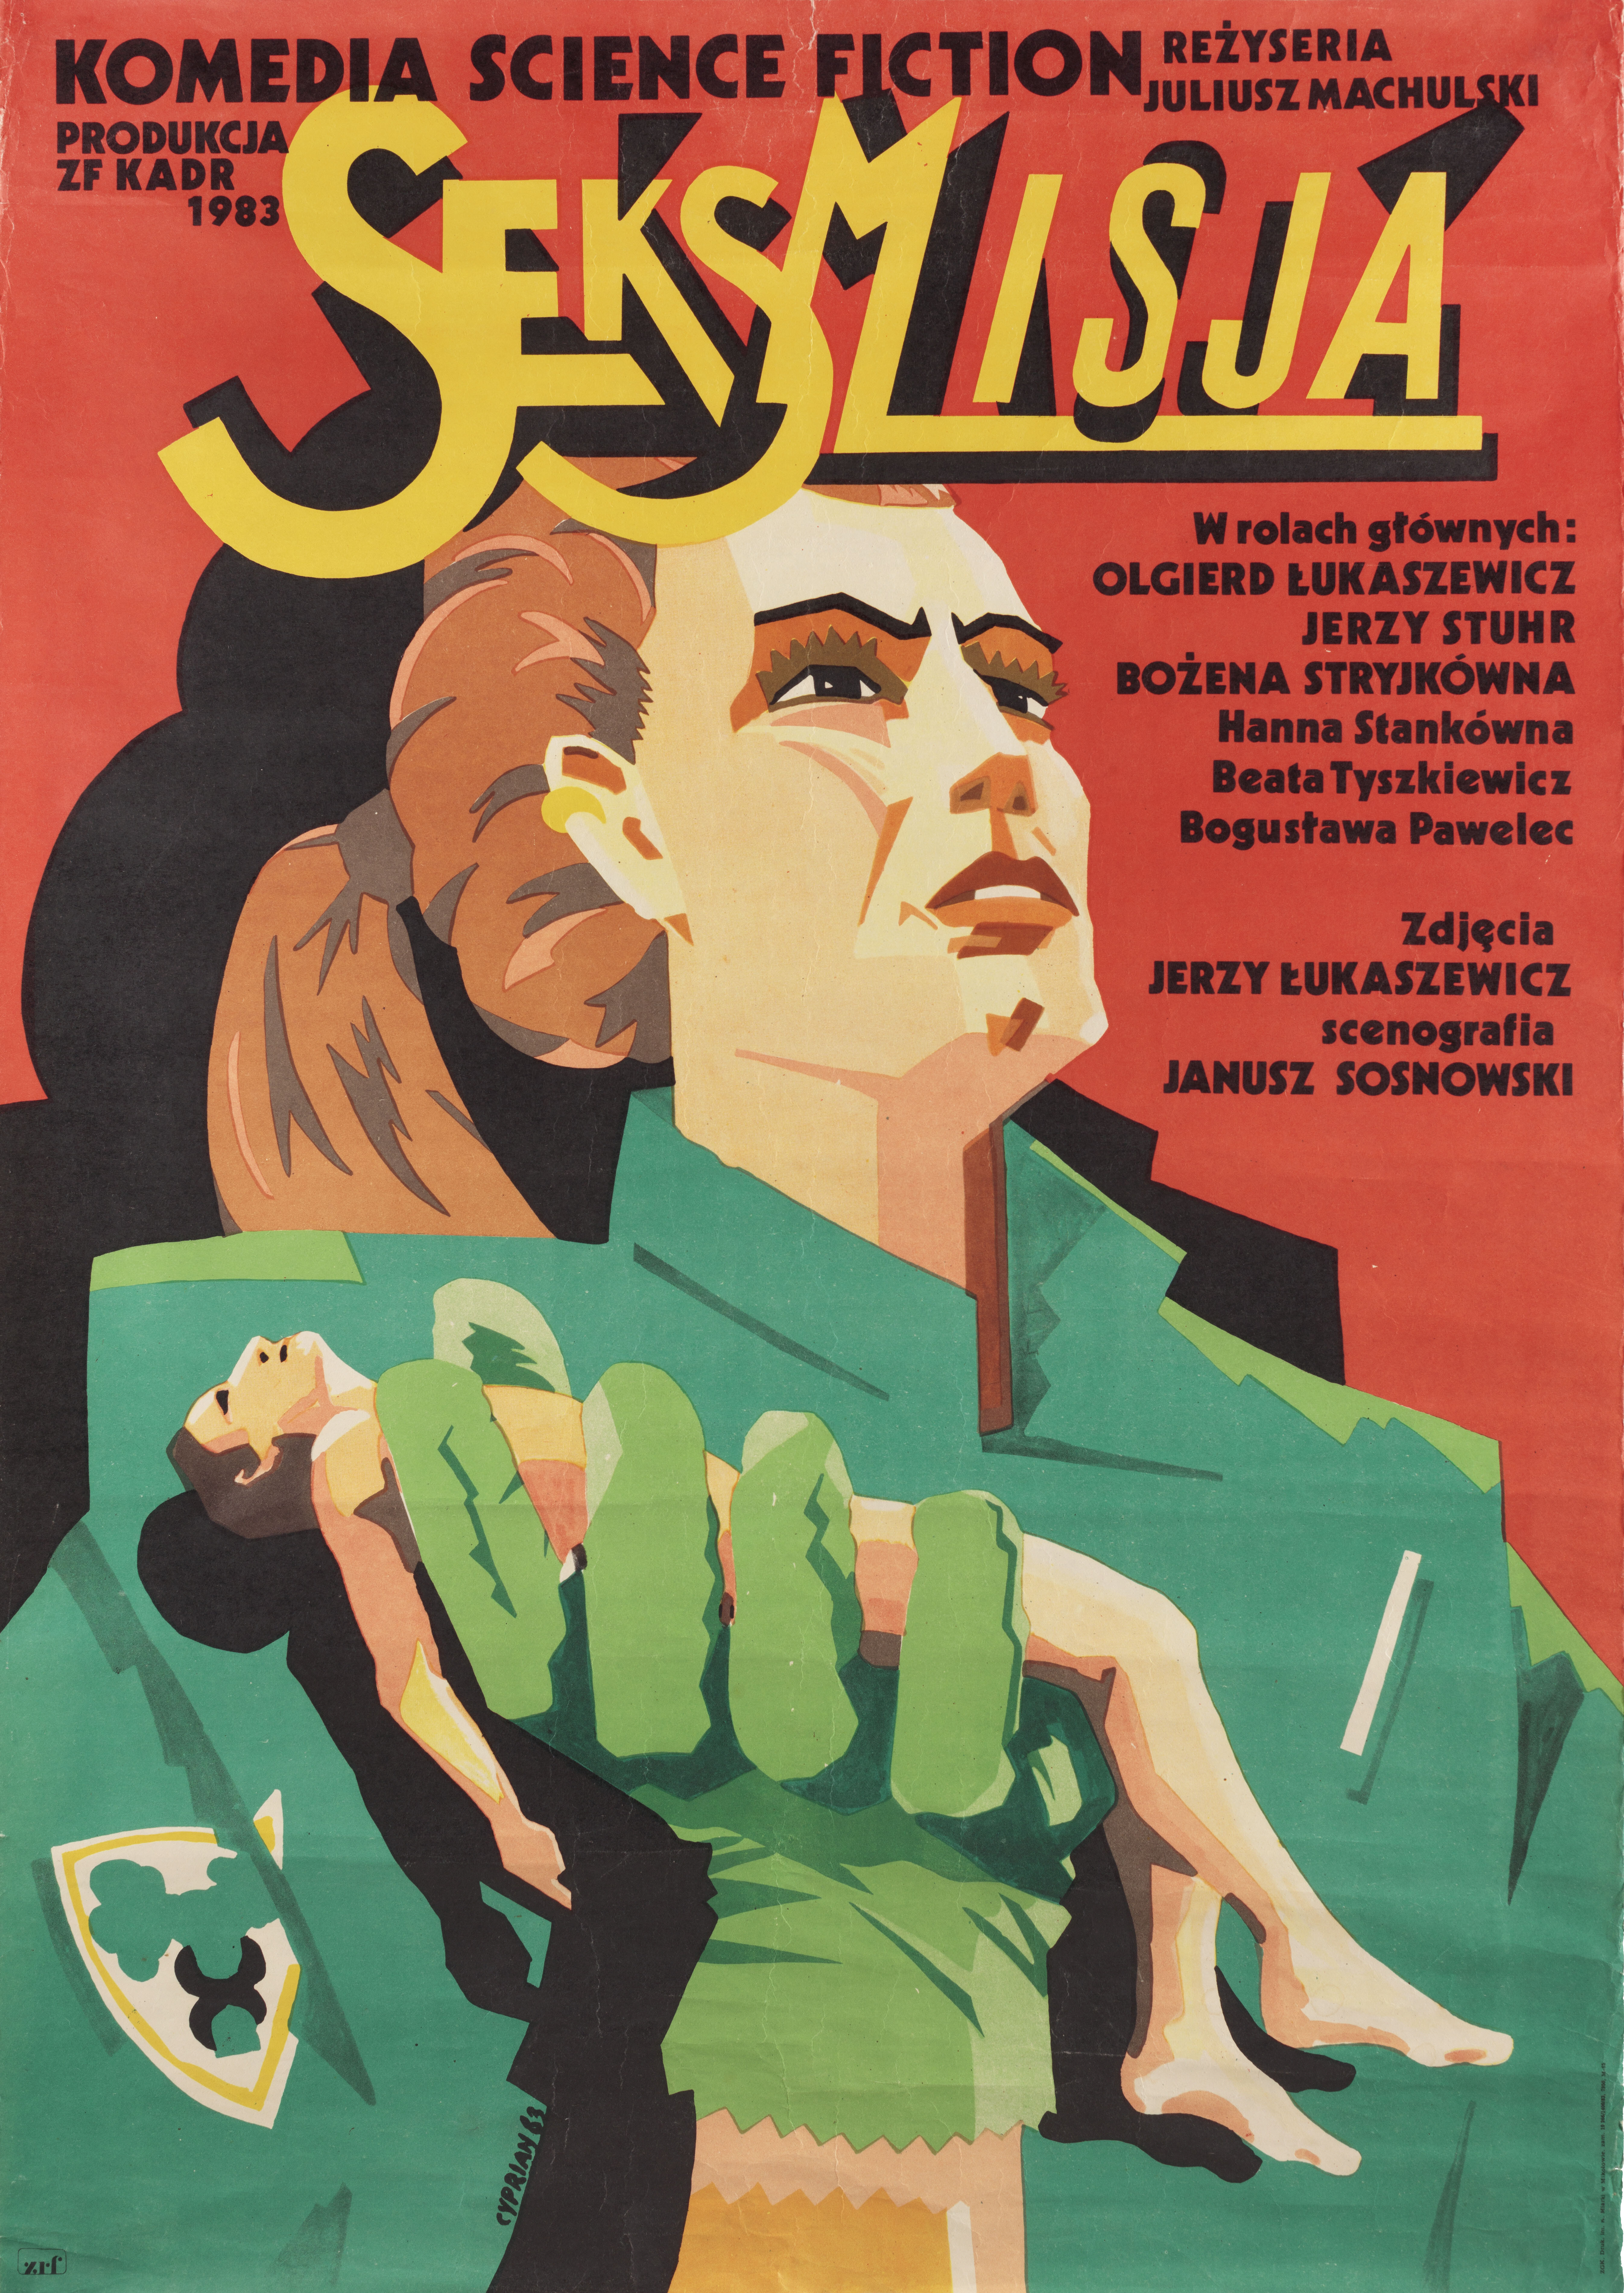 Сексмиссия (Sexmission, 1984), режиссёр Юлиуш Махульский, польский постер к фильму, автор Киприан Косельняк (графический дизайн, 1984 год)